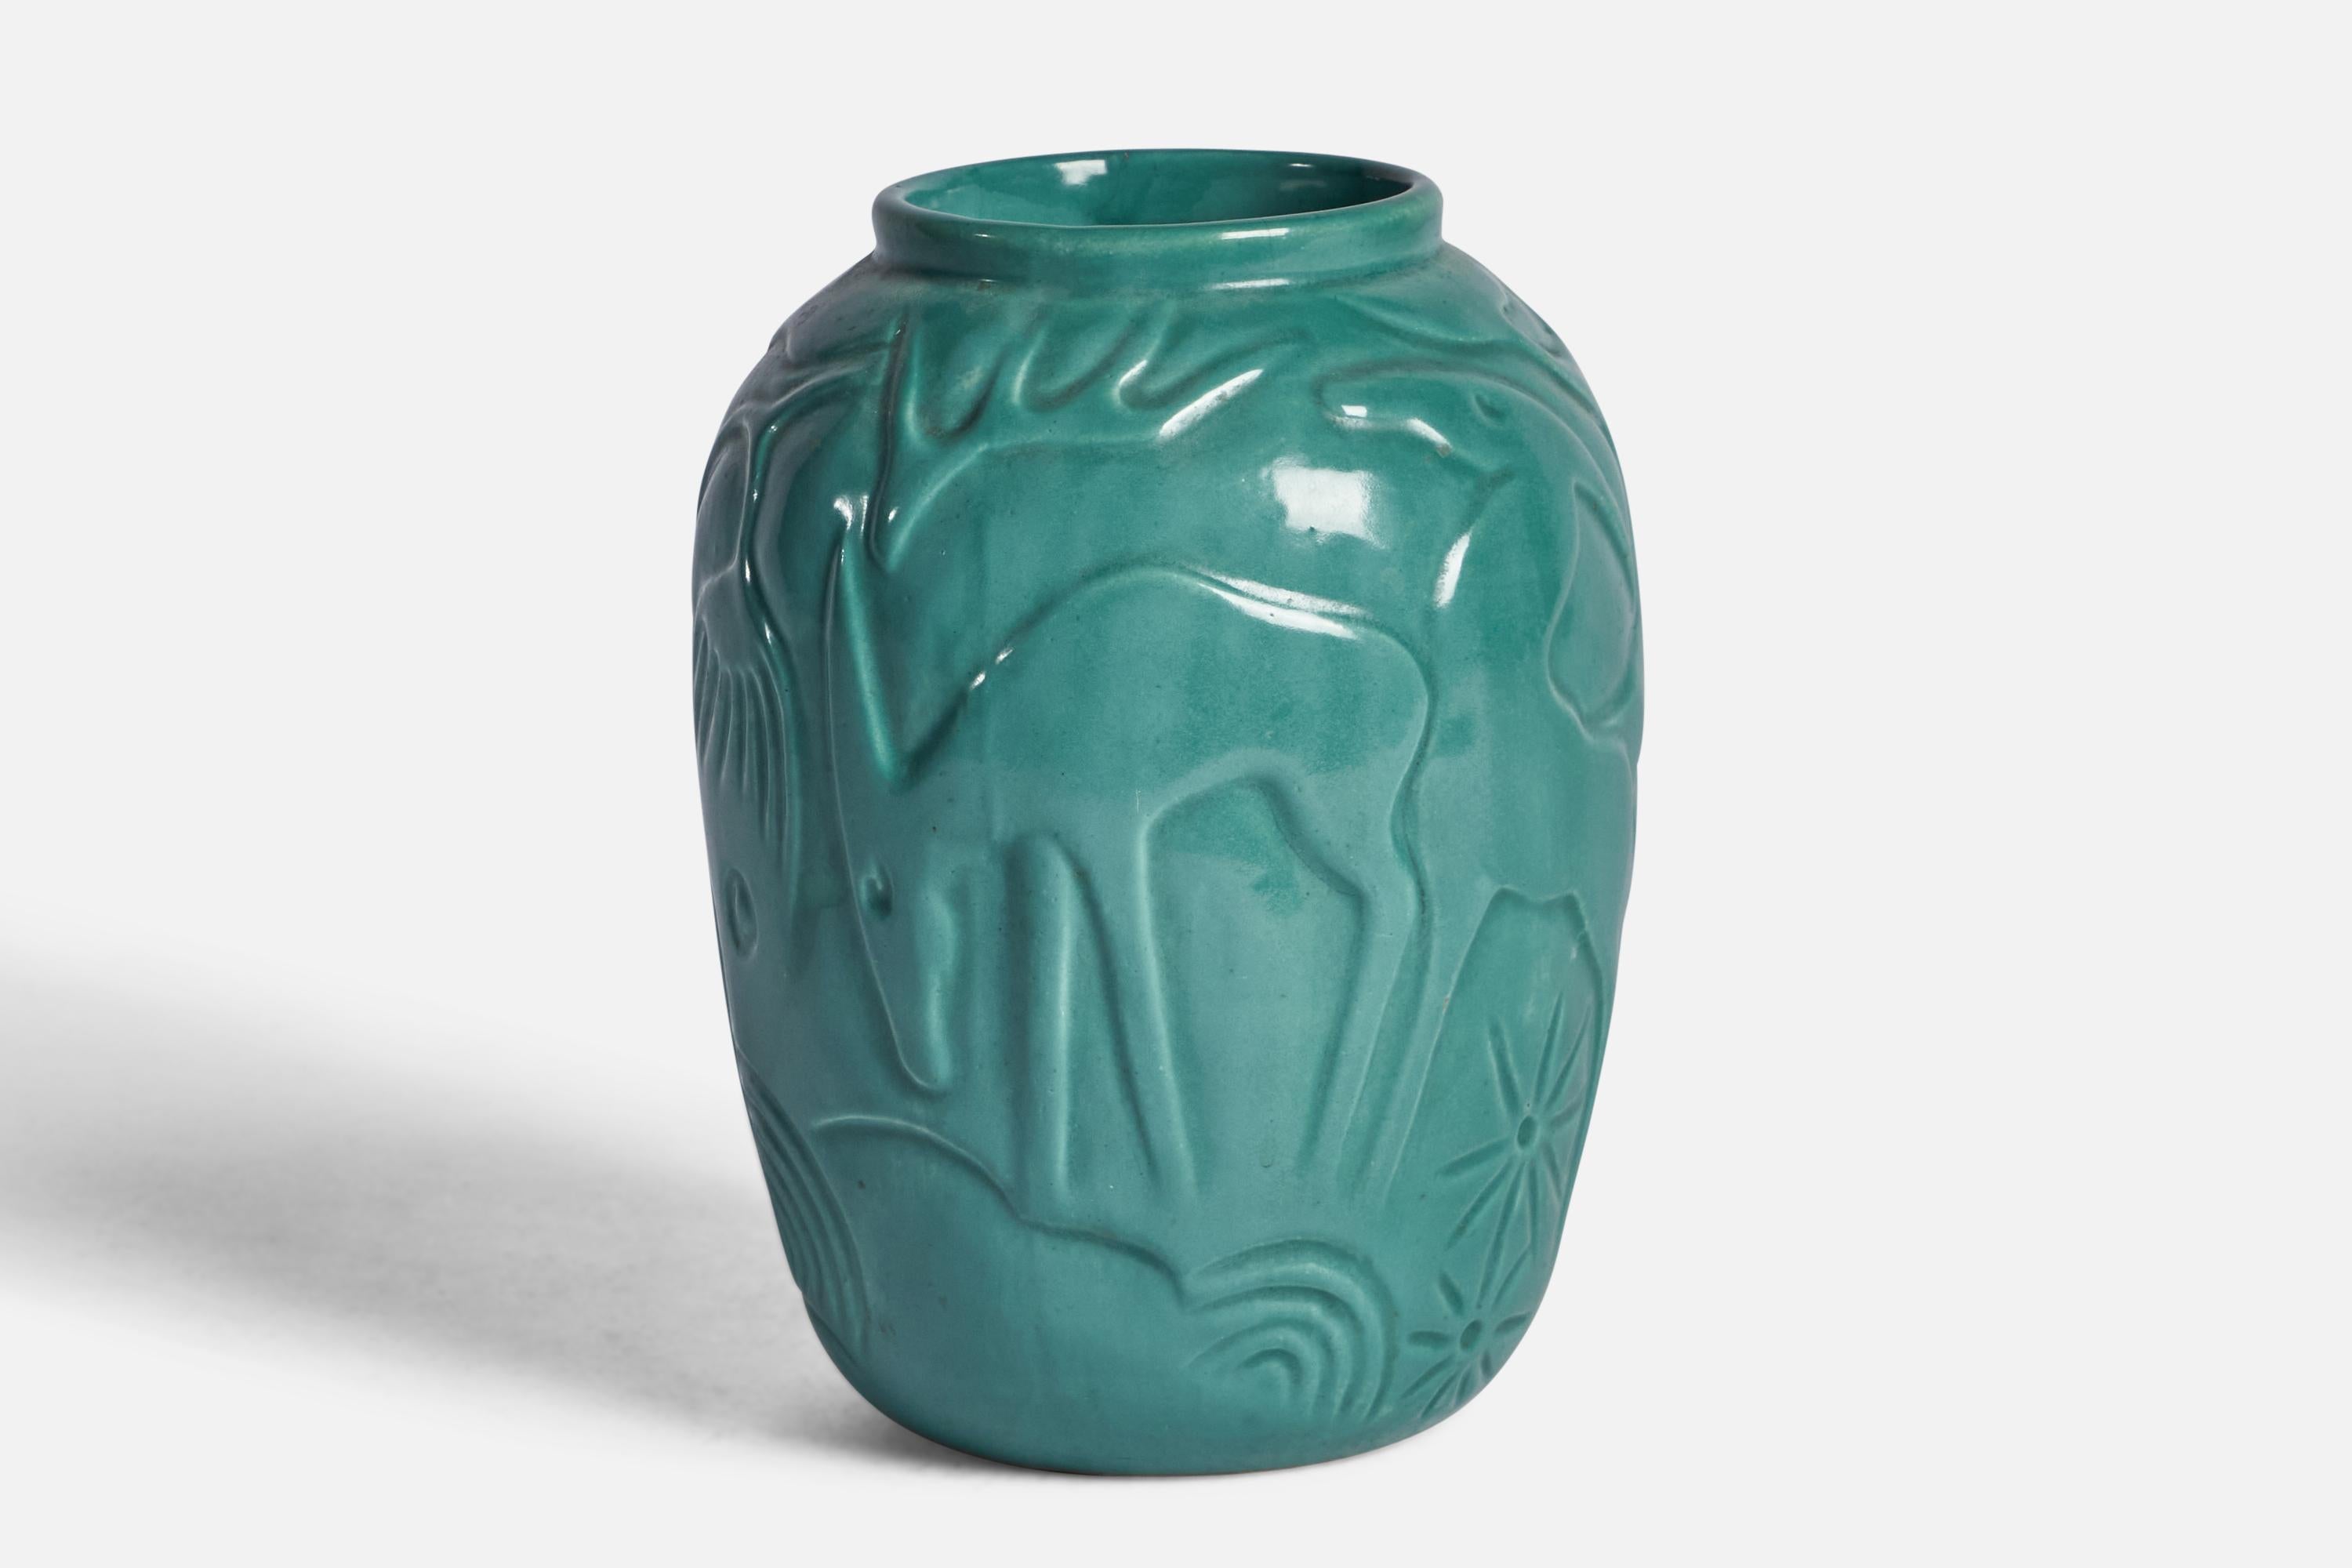 Jarrón de cerámica vidriada en verde diseñado y producido por Syco Keramik, Suecia, c. 1930.